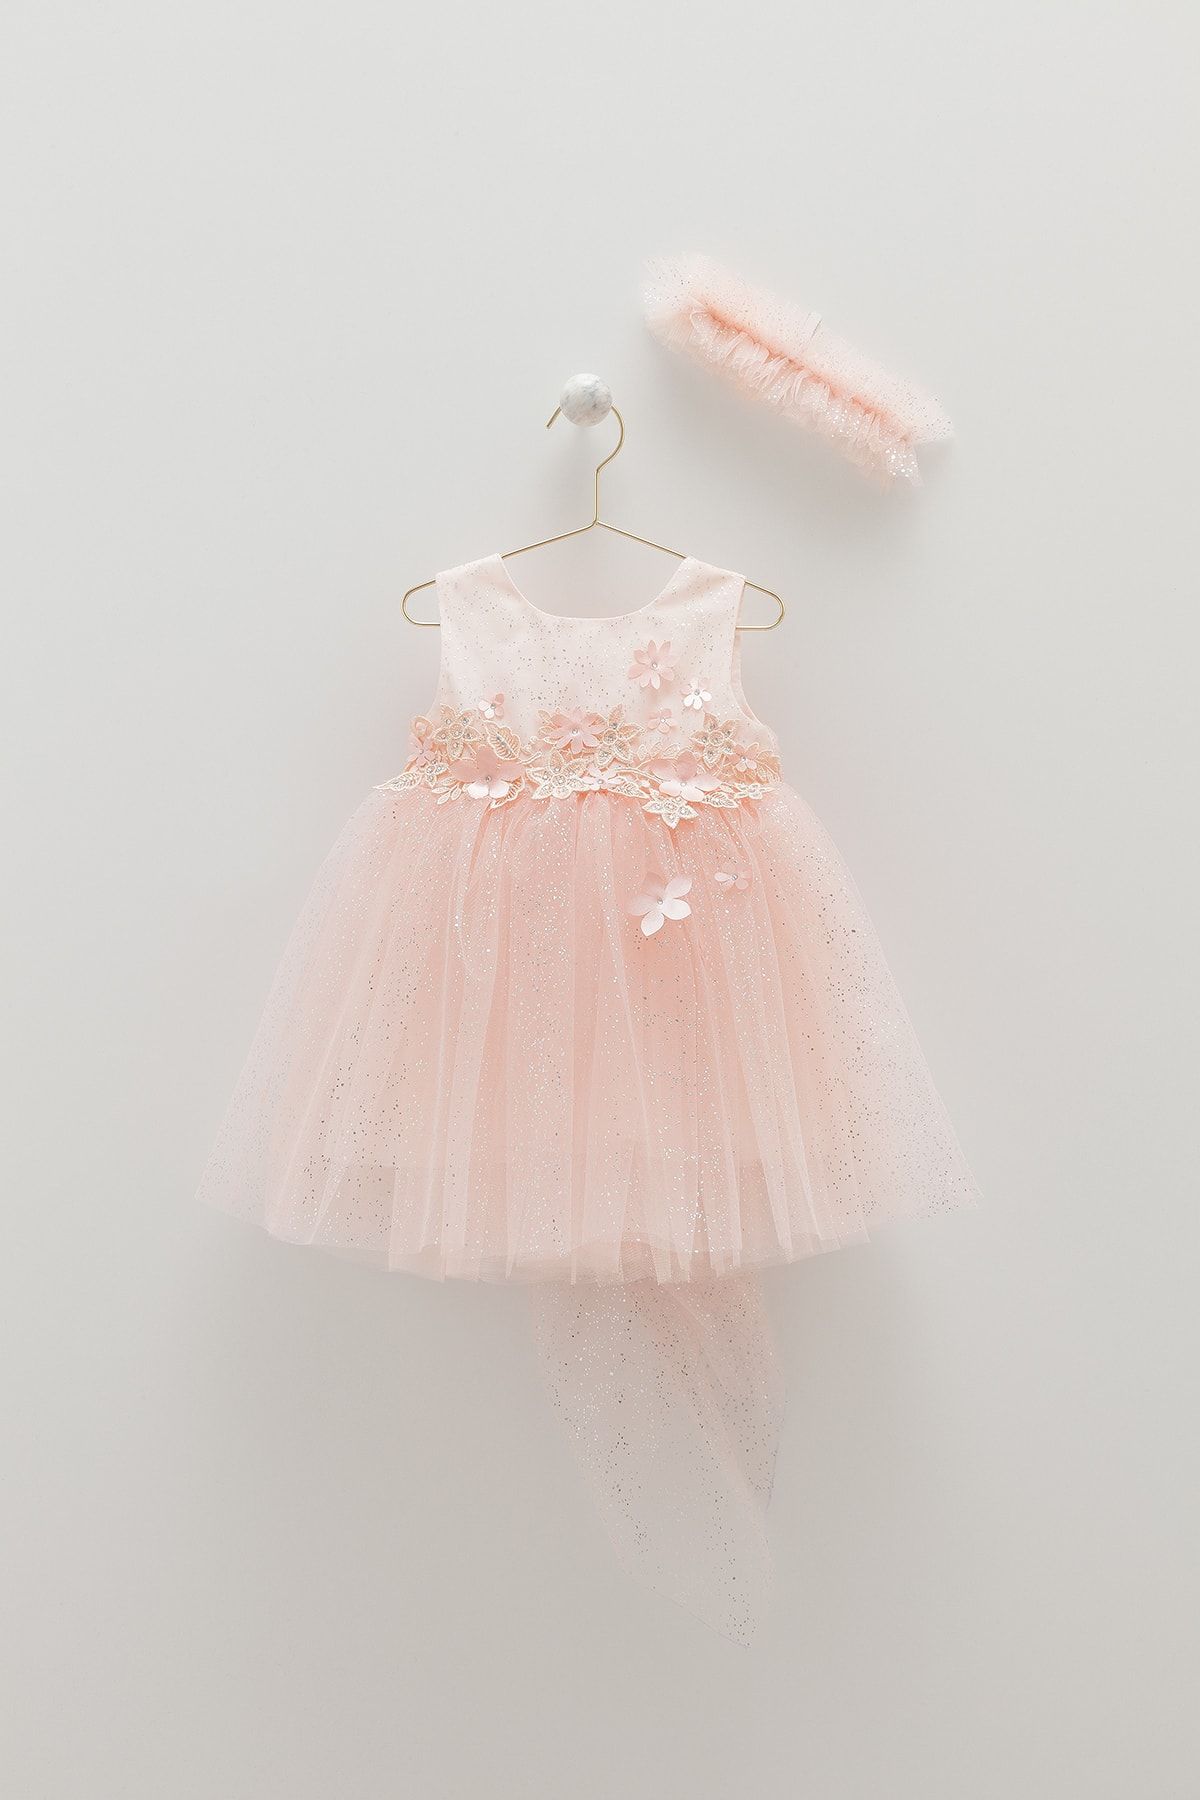 Caramell Kız Bebek Parti Doğum Günü Abiye/bandanalı Tütü Etekli Prenses Elbise (DRESSES) Mendil Hediyeli